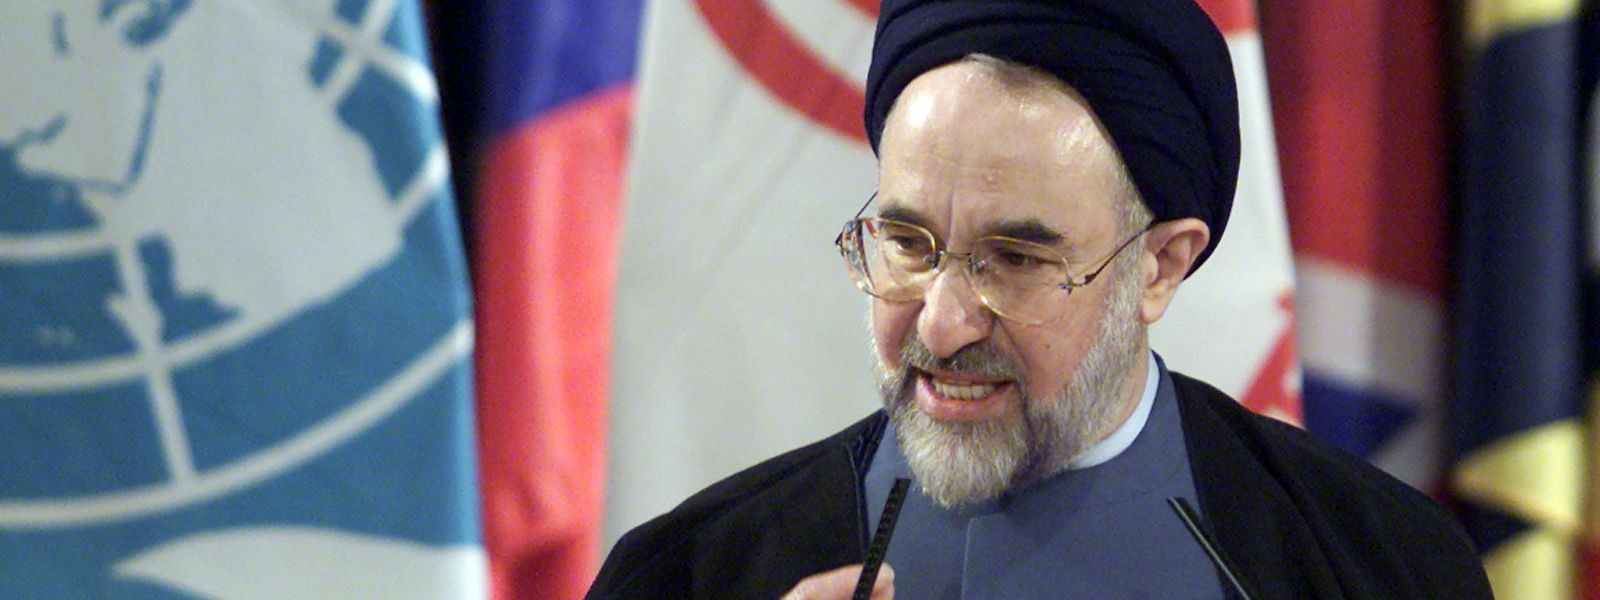 Zur Zeit der Terroranschläge 2001 war der Reformer Mohammed Khatami Präsident des Iran. Trotz einer zwischenzeitlichen Annäherung zu den USA kam sein Land auf Bushs Liste der sogenannten "Achse des Bösen".